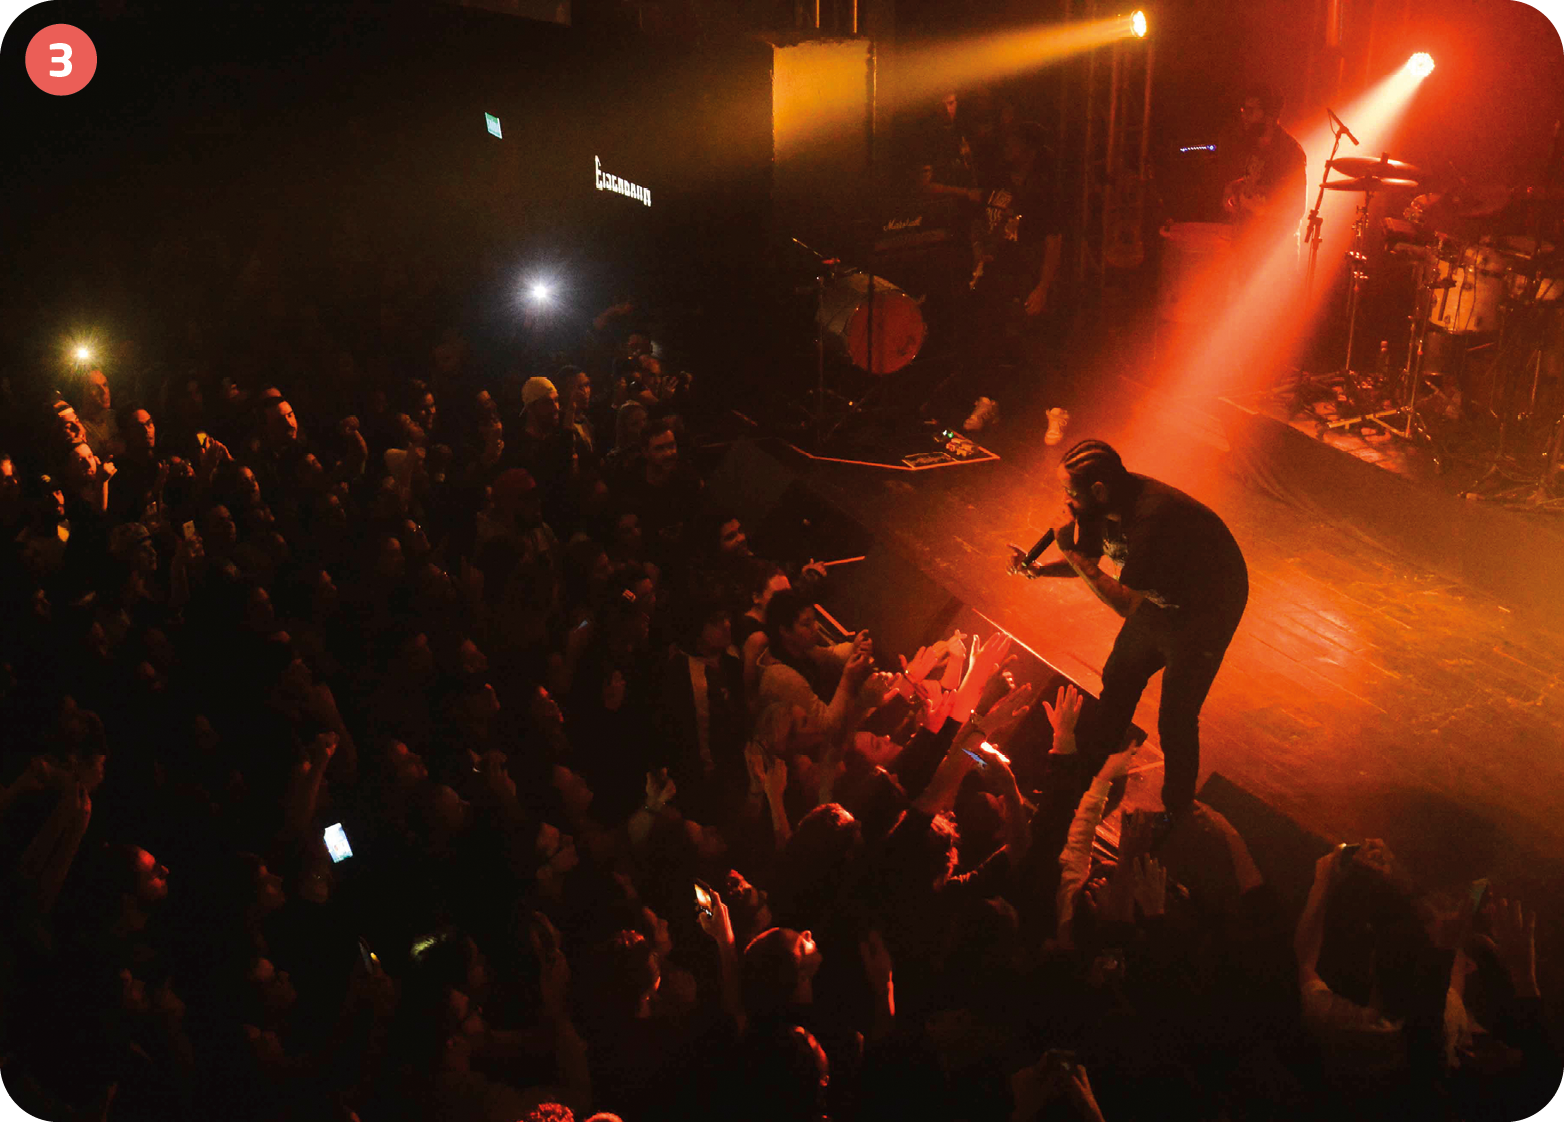 Fotografia. Vista lateral de cima de um palco iluminado com luzes vermelhas; à direita, há um homem com cabelo penteado com tranças para trás e segurando um microfone na frente da boca. À esquerda, há uma plateia no escuro.